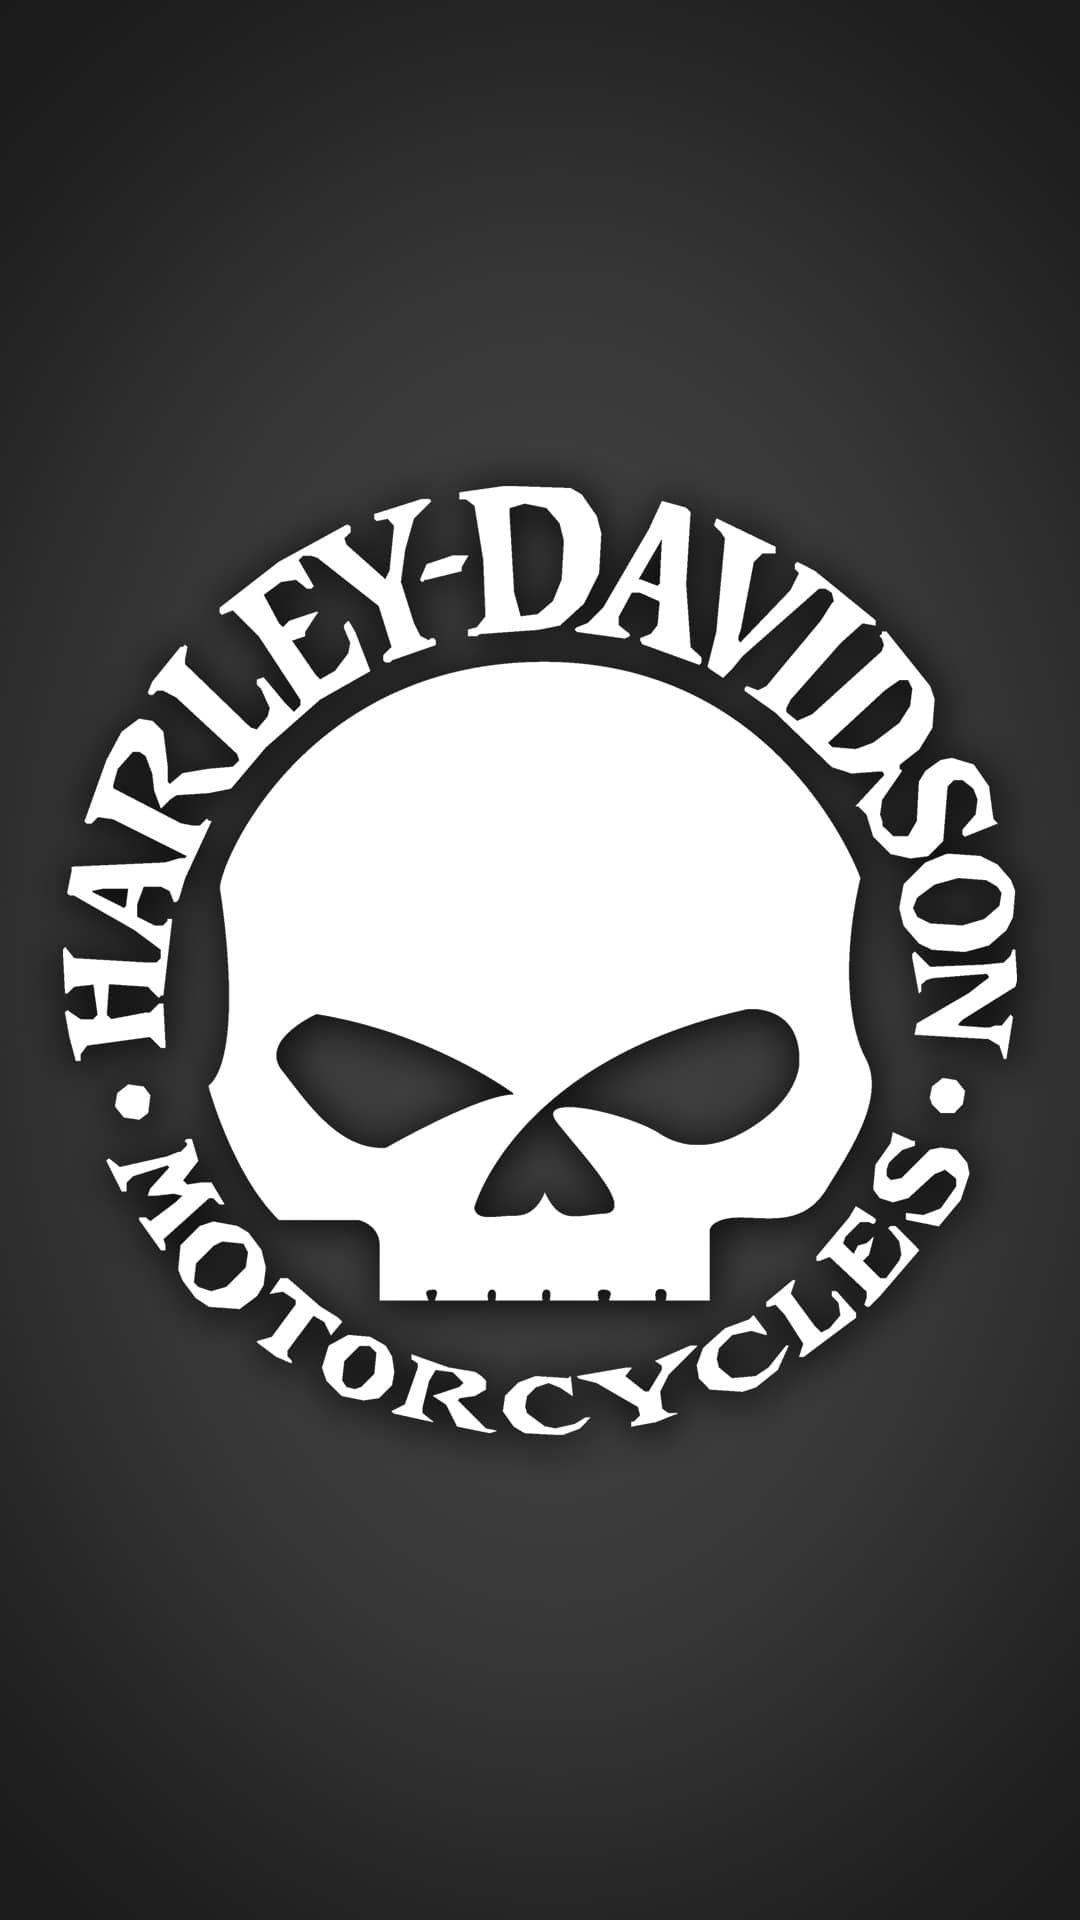 Wallpaper Harley Davidson Skull Logo Wallpapers